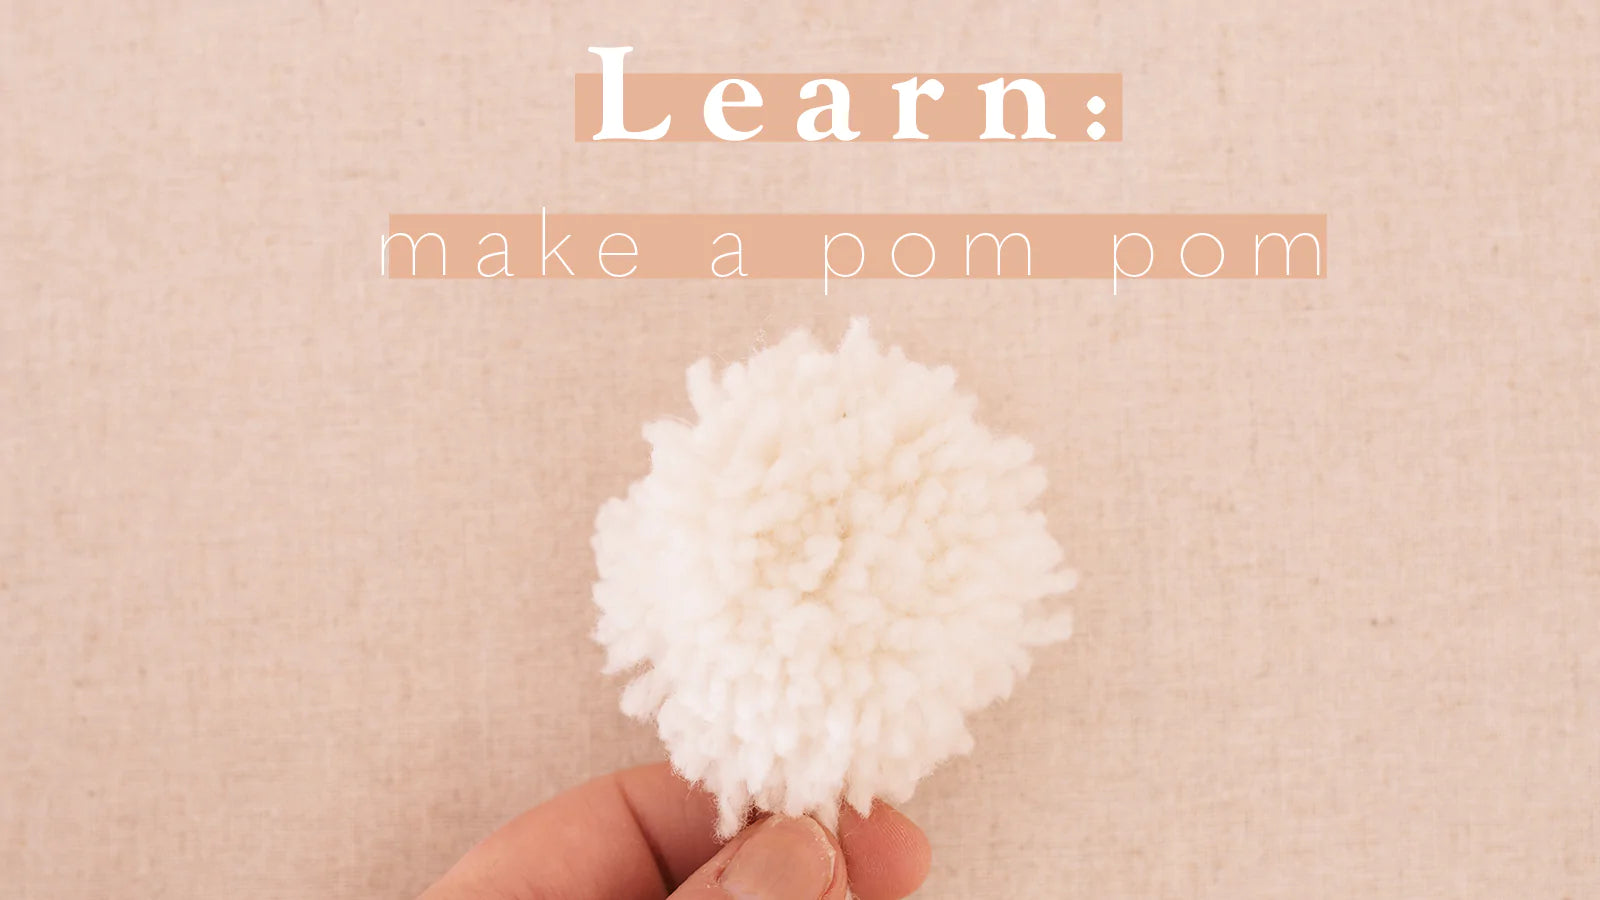 Prym 2-in-1 Pompom Maker – The Yarn Club, Inc